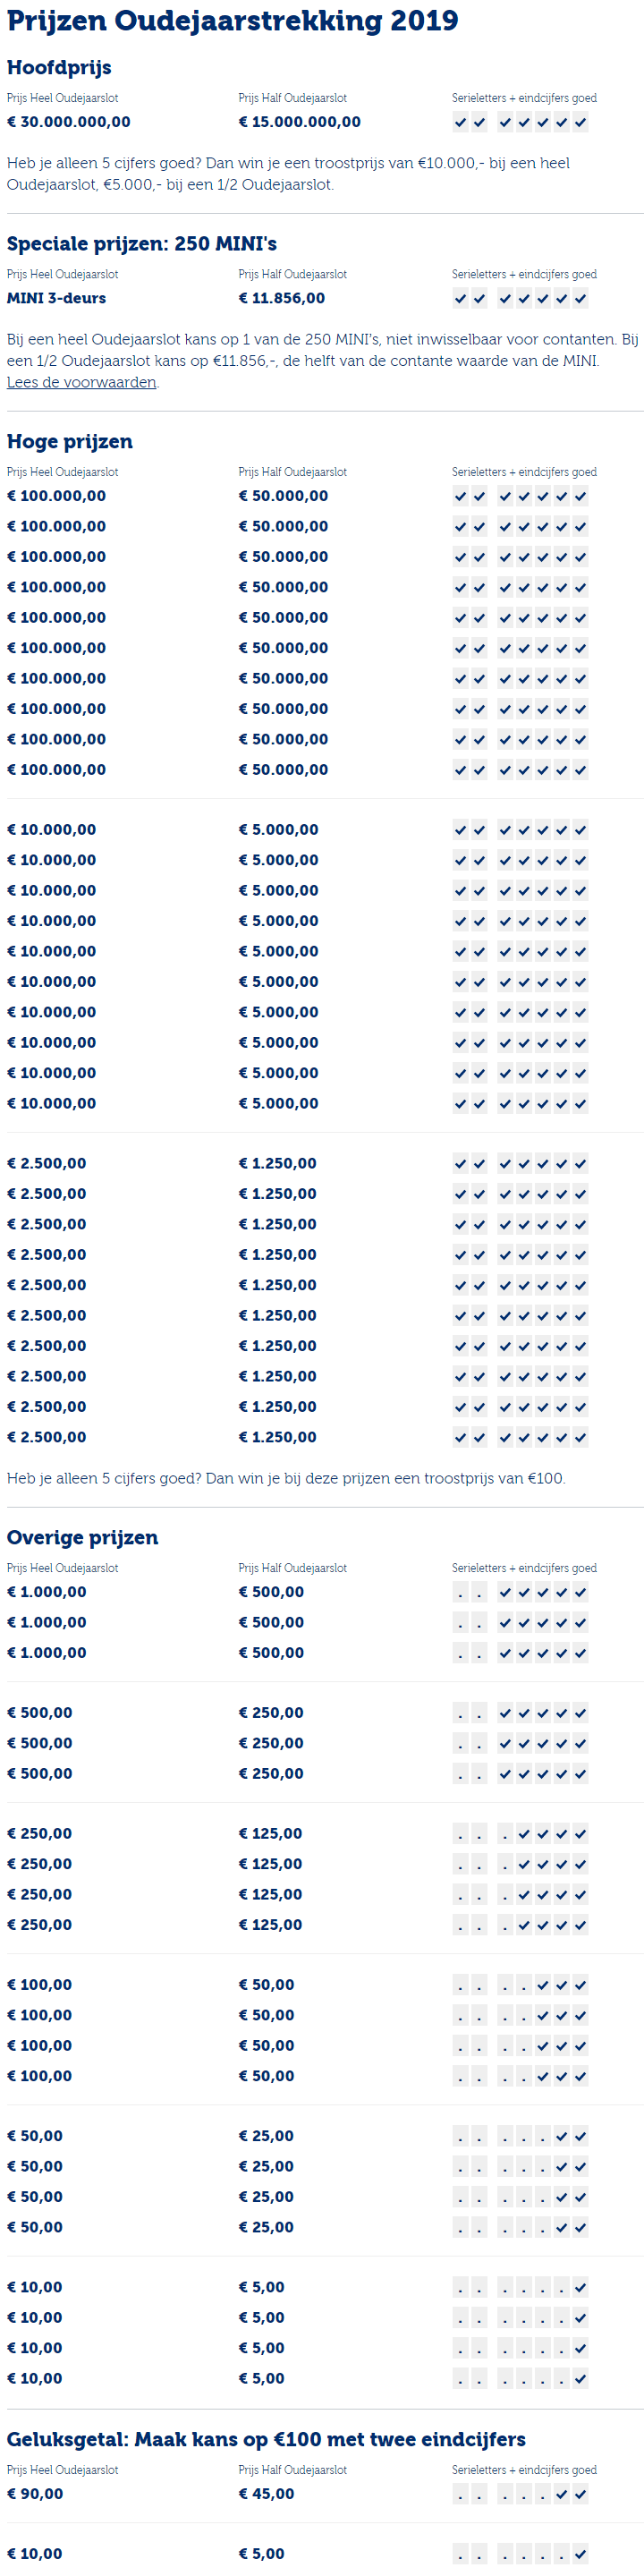 Staatsloterij Oudejaarstrekking hoofdprijs € 30 miljoen ...